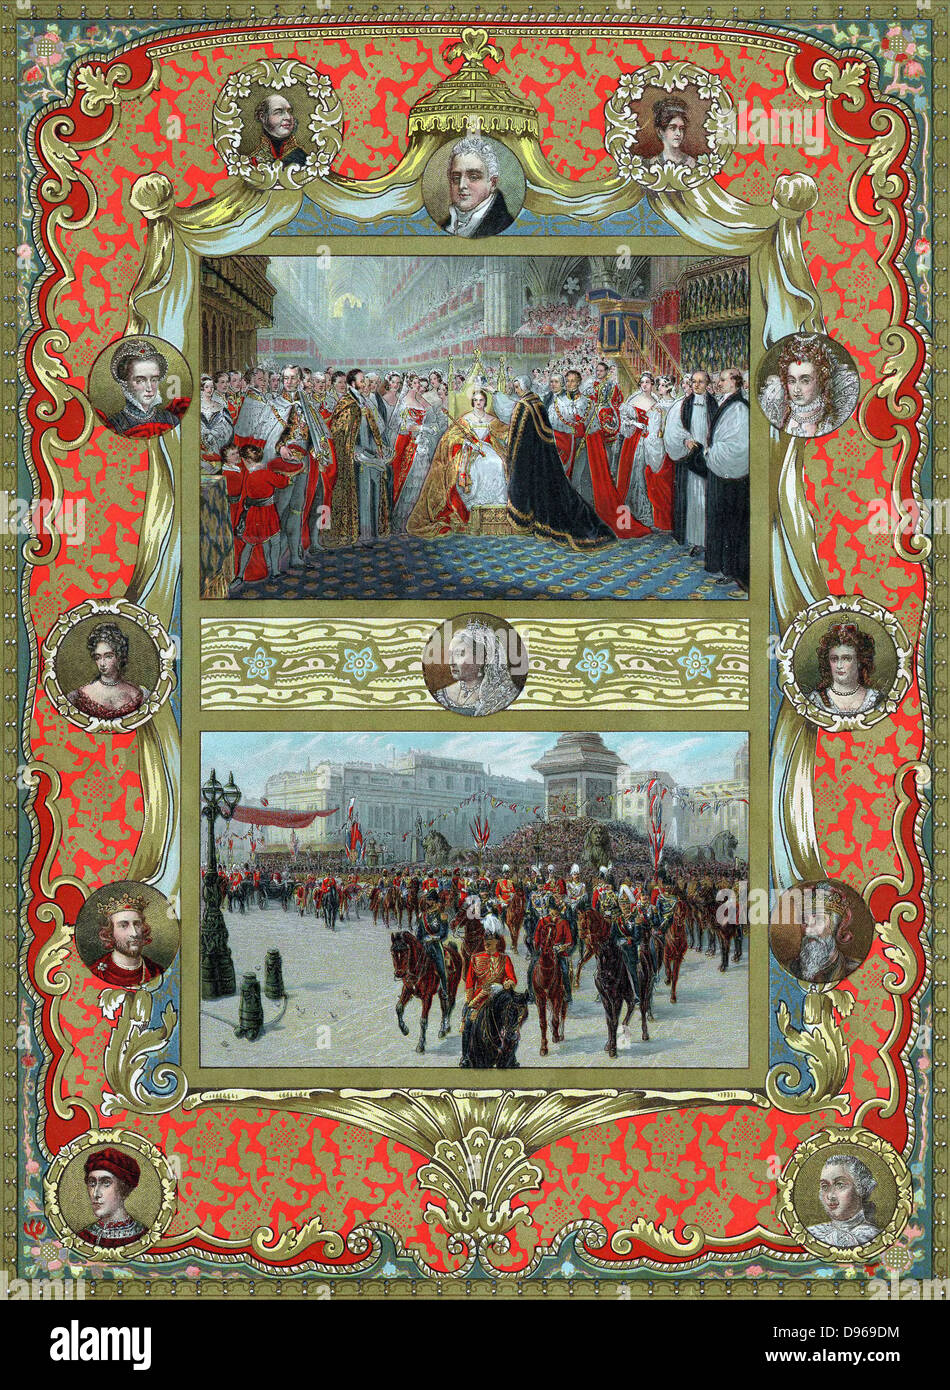 Victoria (1819-1901) reine d'Angleterre à partir de 1837 et l'Impératrice de l'Inde à partir de 1876. Couronnement dans l'abbaye de Westminster, le 28 juin 1837. L'archevêque de Canterbury, plaçant couronne sur Queen's head (en haut) ; procession jubilaire 22 juin 1887 (en bas) ; portraits environnants : top ; Duc de Kent (père), William IV, duchesse de Kent (mère), gauche, Marie, Reine des Écossais, Mary II, Henri III, Édouard III, George III. Oleograph publié au moment de son jubilé en 1887 Banque D'Images